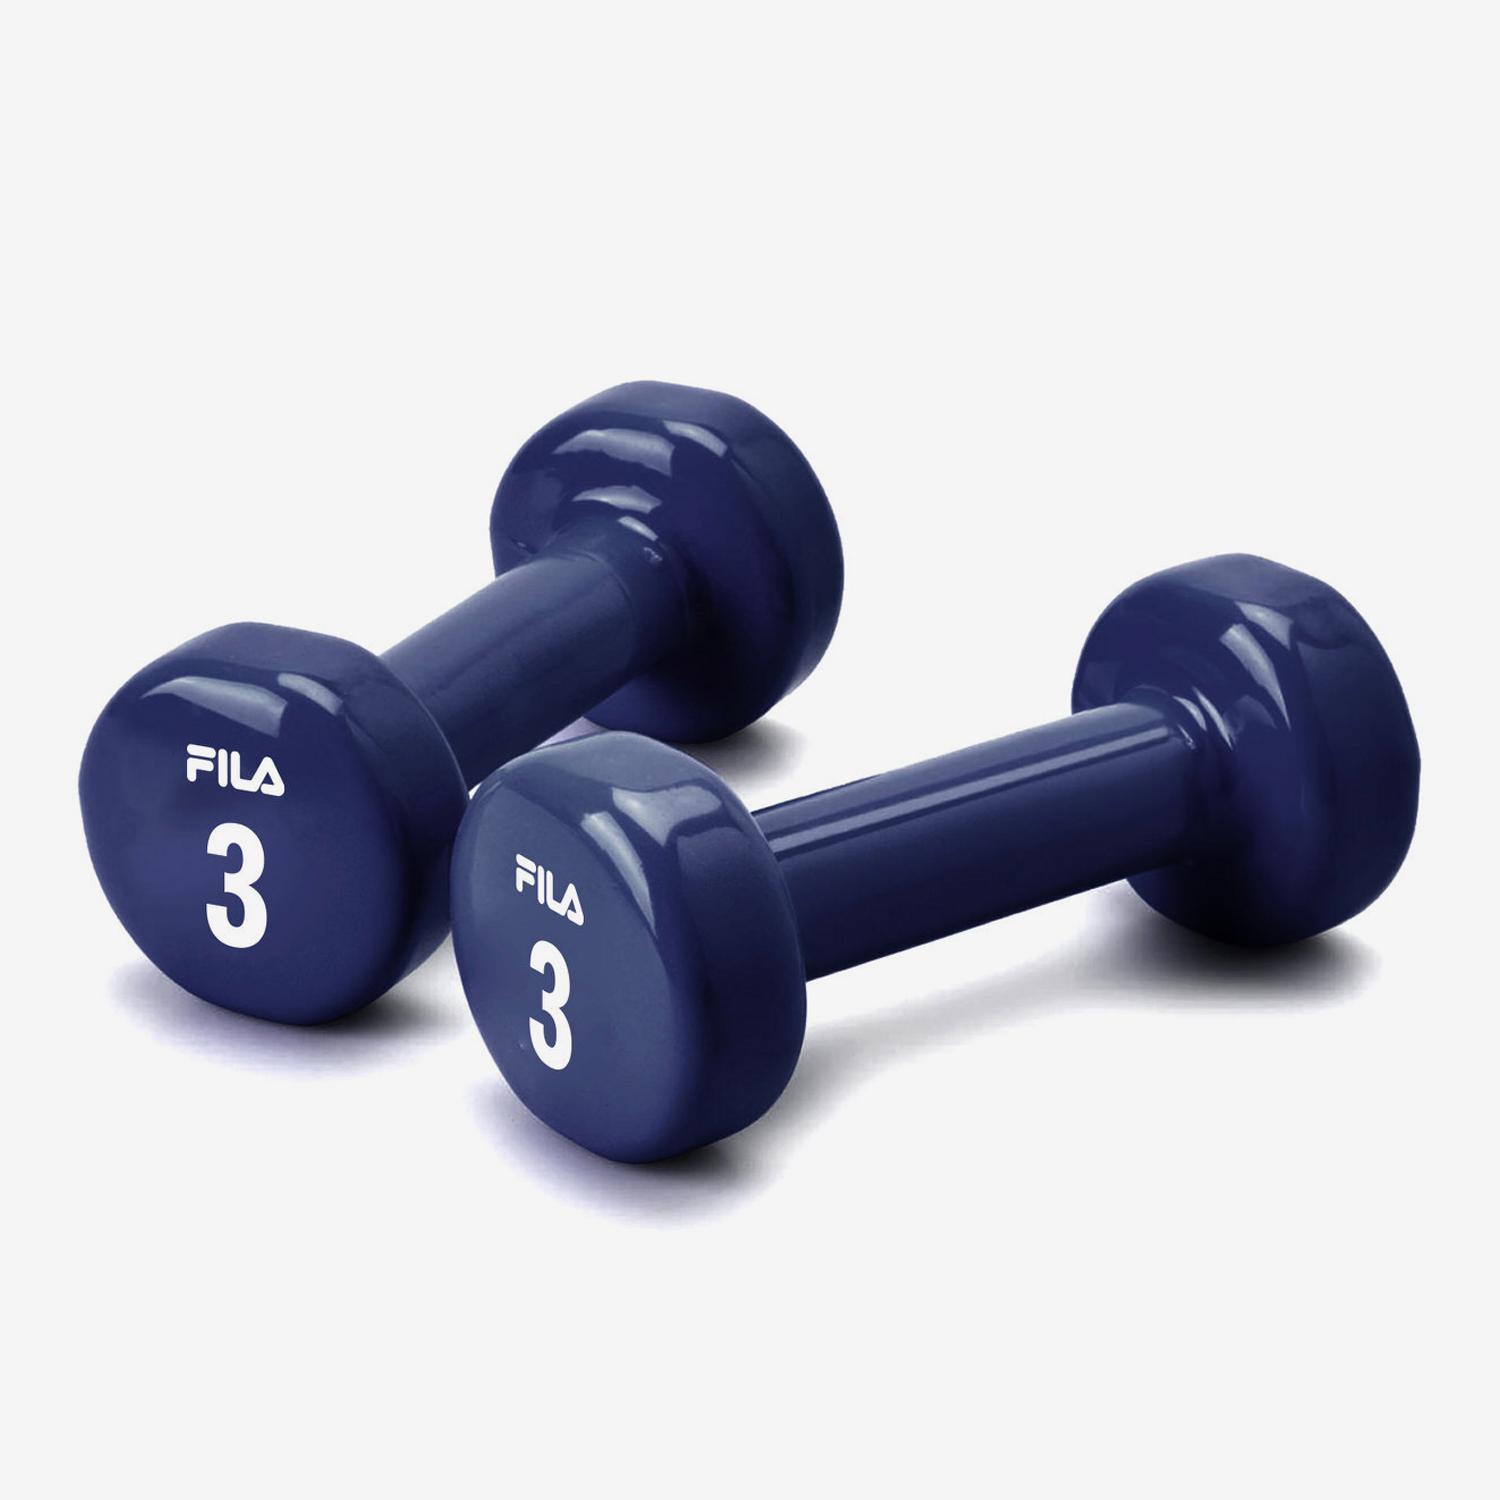 2X mancuernas pesas de 1kg 1,5kg 2kg cubierta en vinilo suave ejercicio  gimnasia